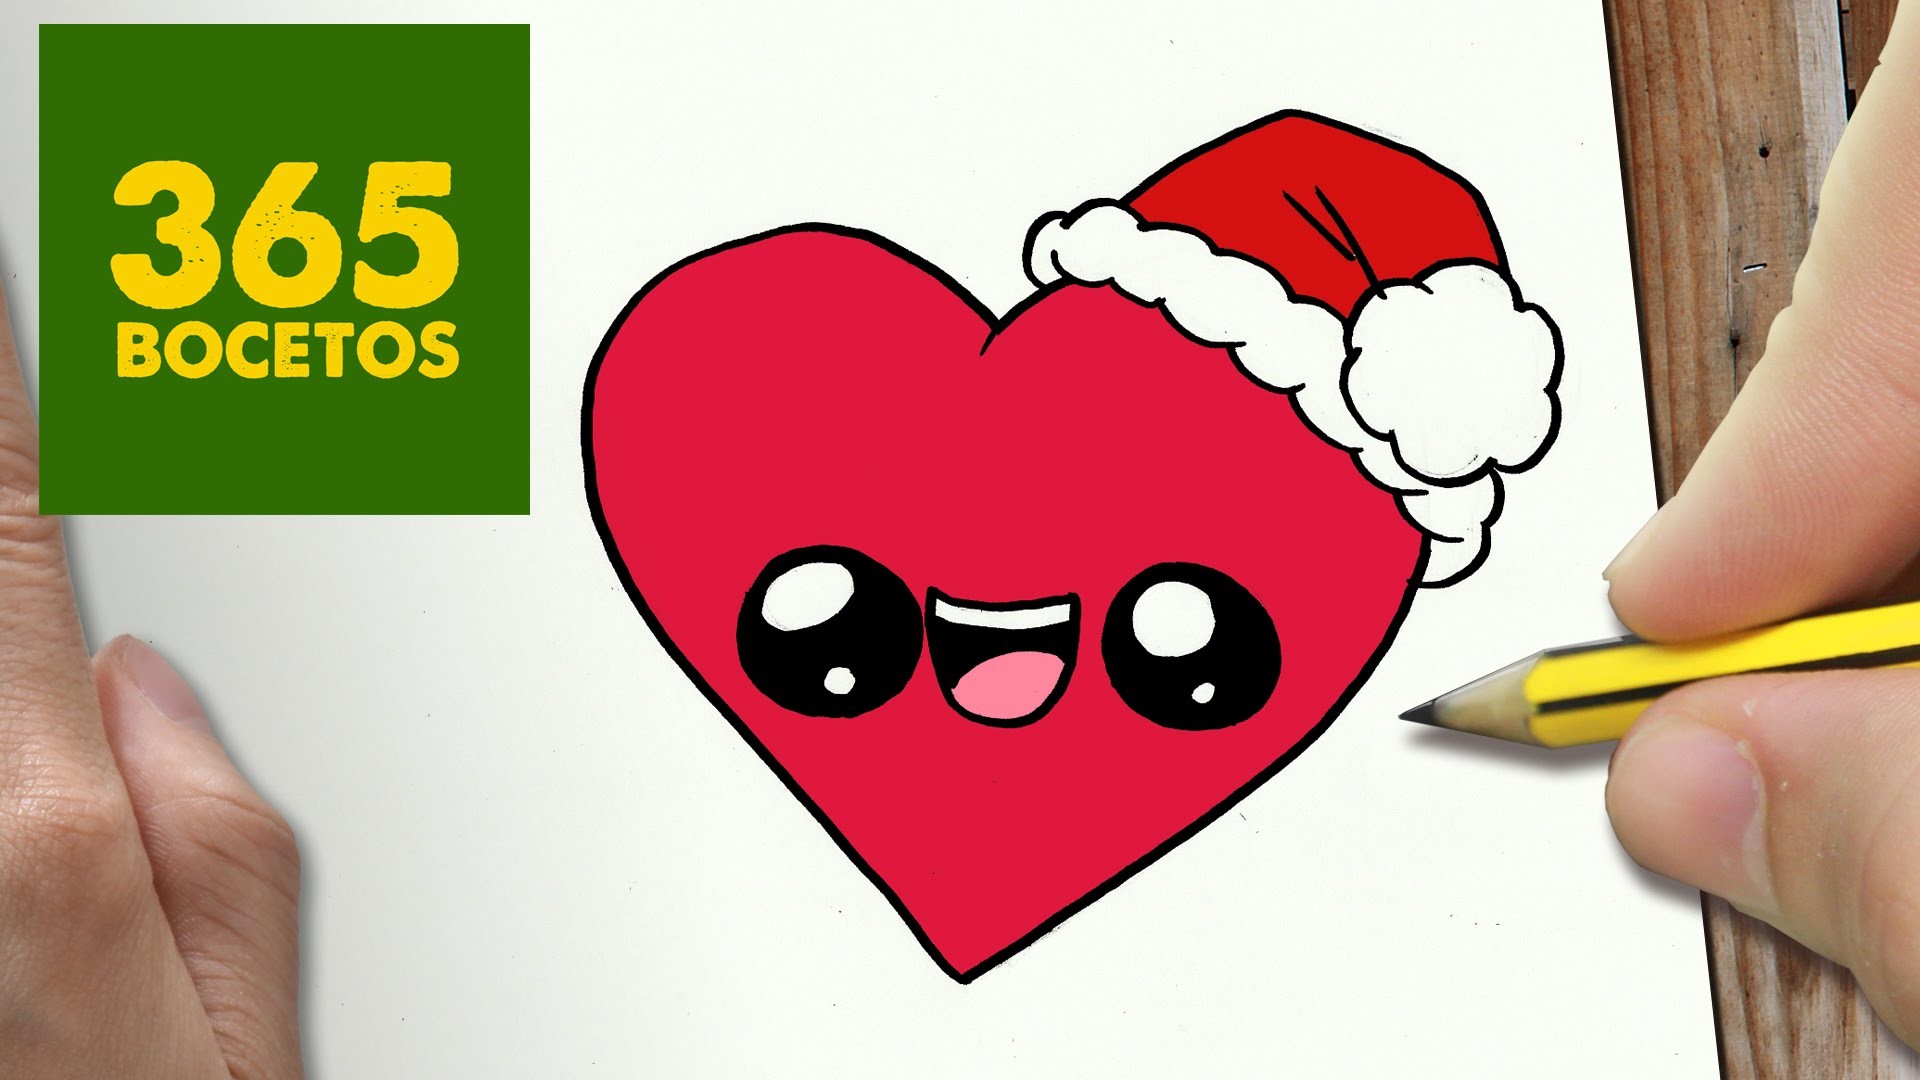 COMO DIBUJAR UN CORAZON PARA NAVIDAD PASO A PASO: Dibujos kawaii navideños - How to draw a Heart